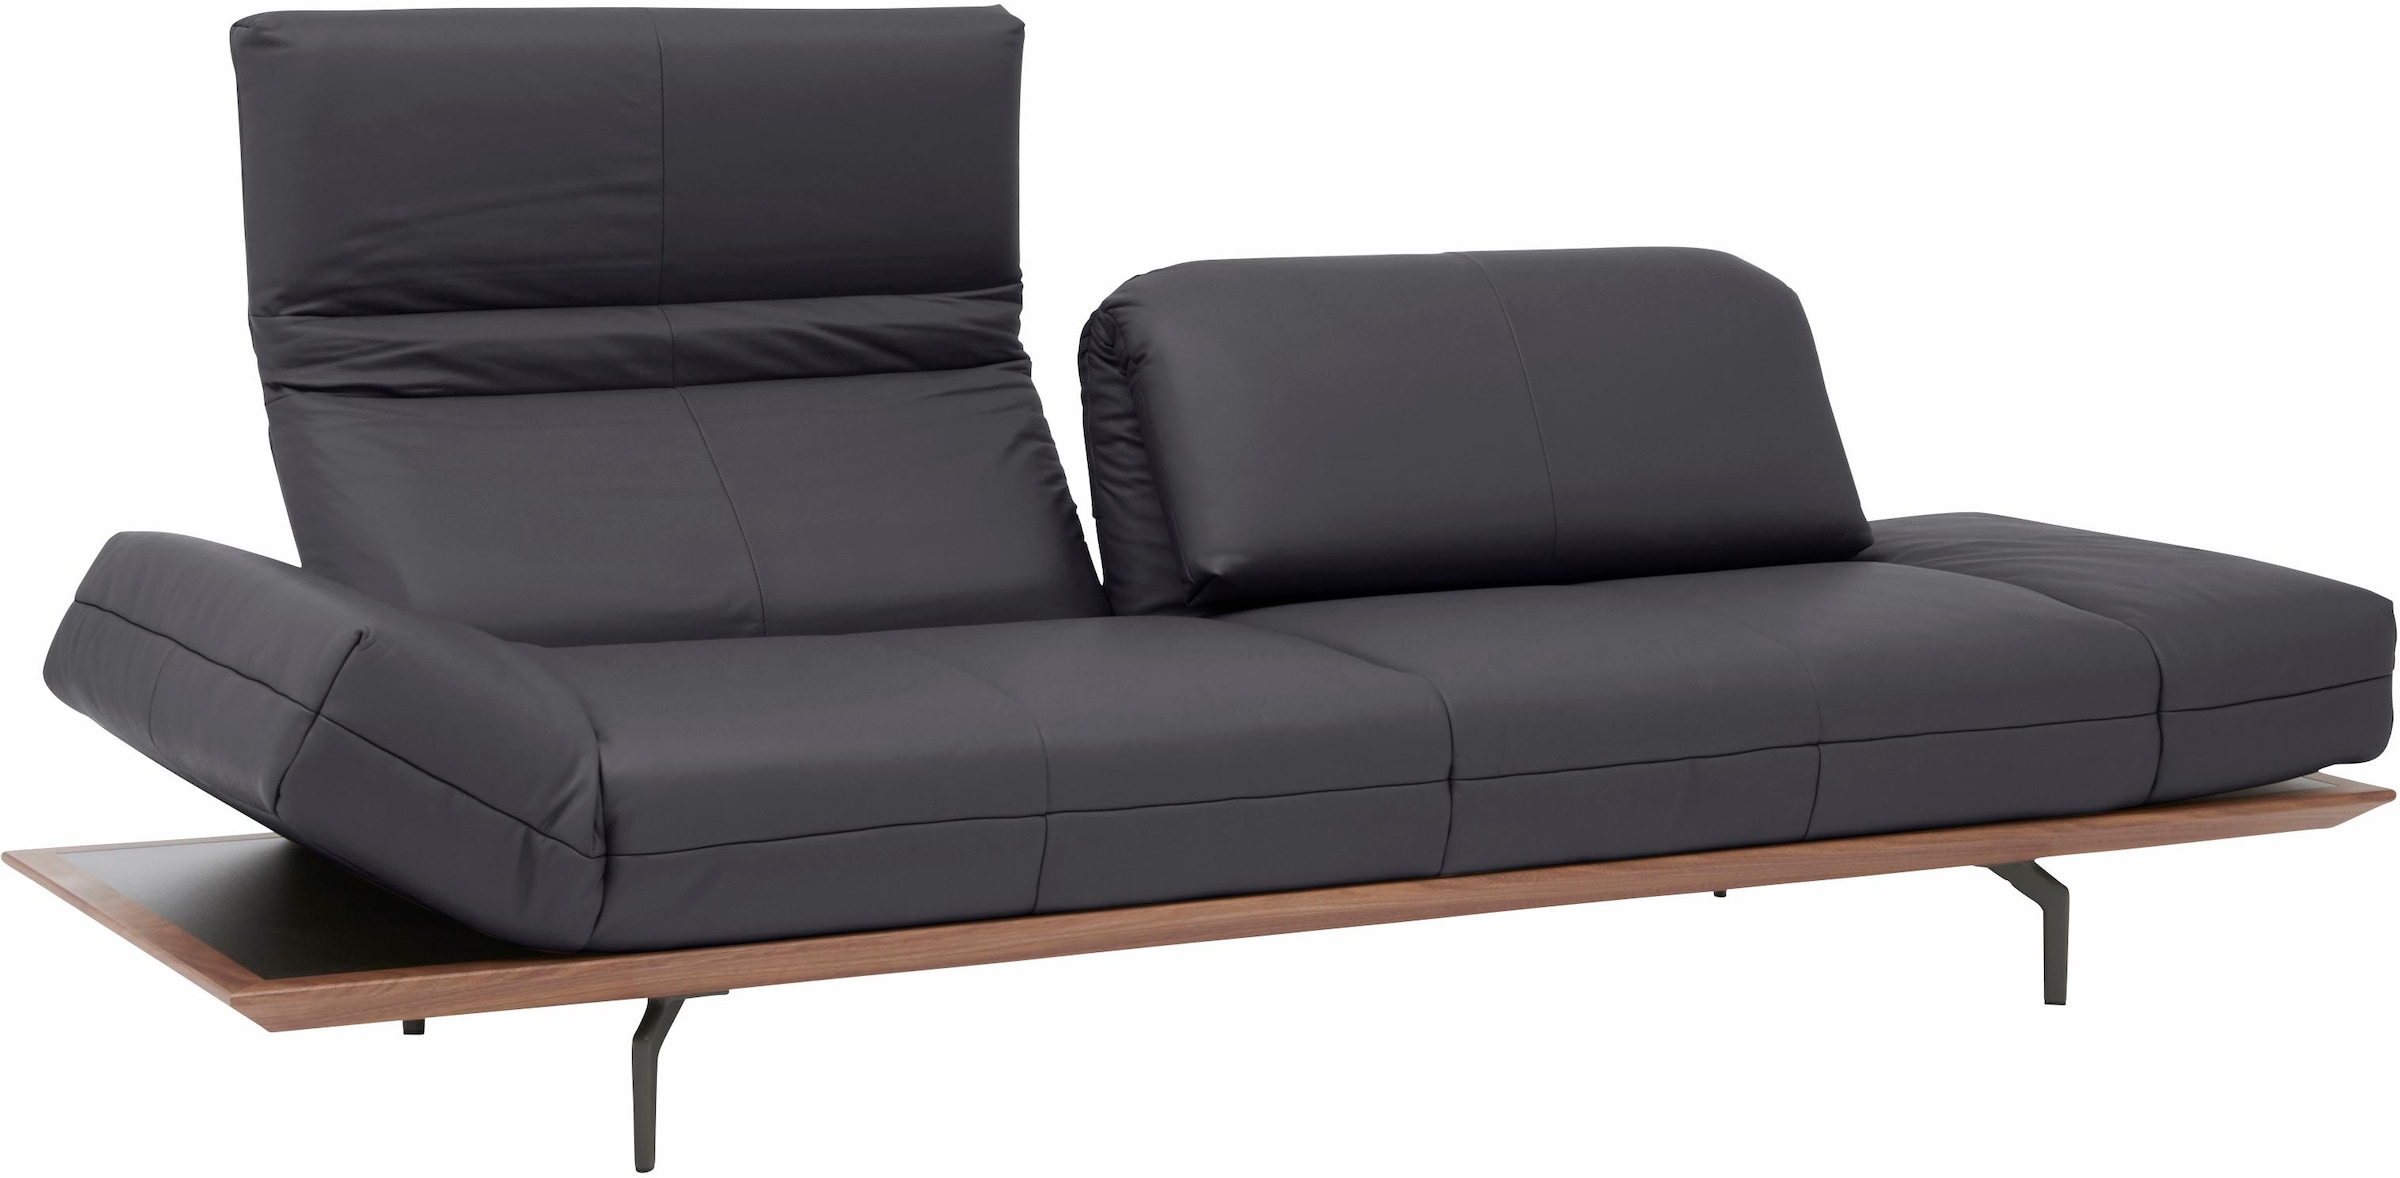 hülsta sofa 4-Sitzer »hs.420«, in 2 Qualitäten, Holzrahmen in Eiche Natur oder Nußbaum, Breite 252 cm